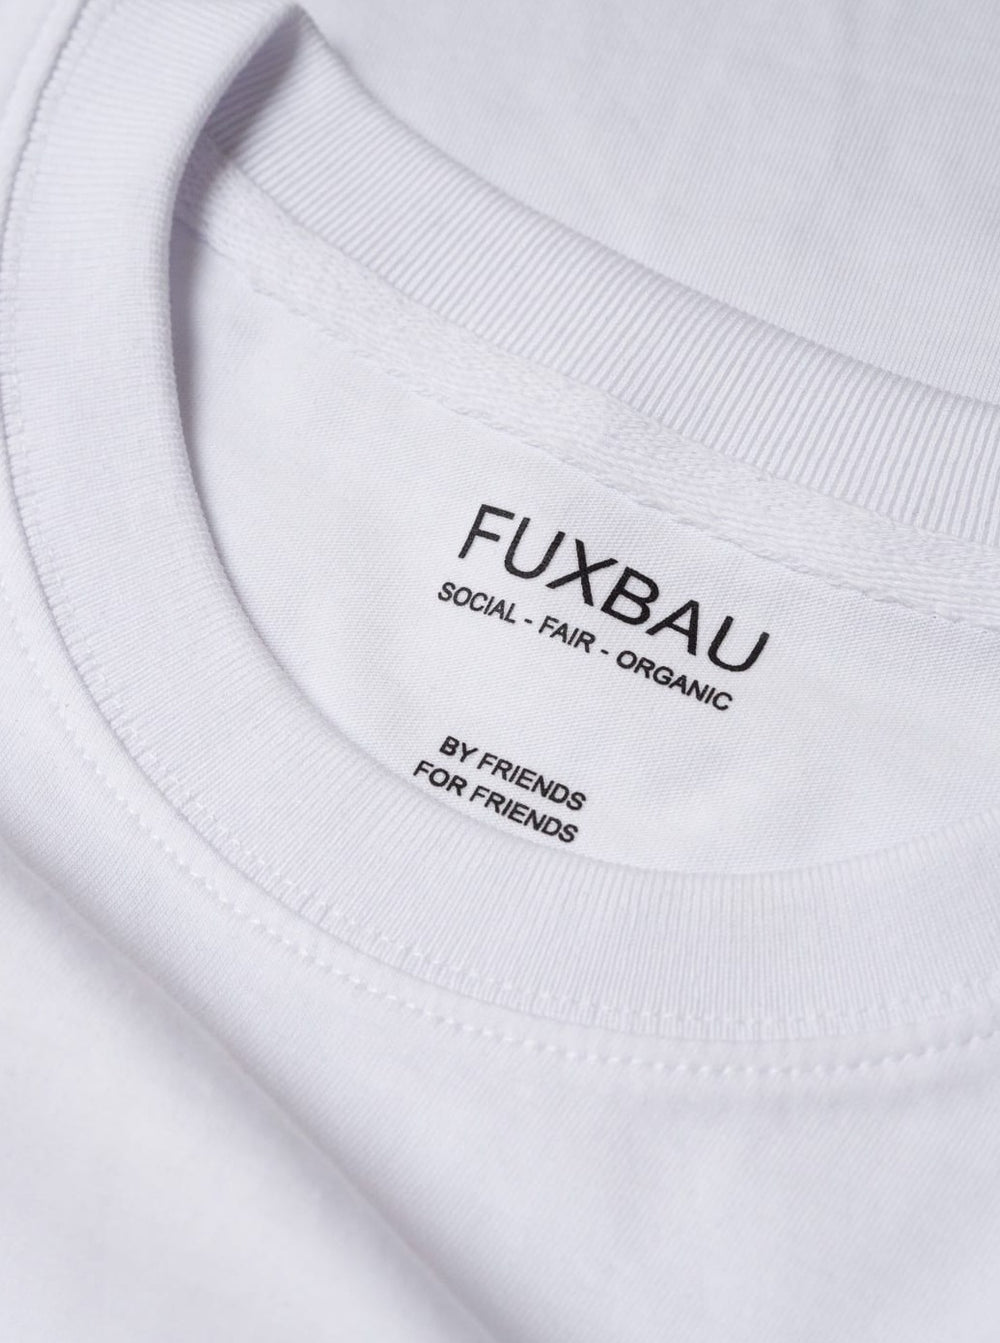 Detailbild eines nachhaltiges FUXBAU Basic T-Shirt in weiß mit einem schwarzen Imprint. Gefertigt aus 100% Biobaumwolle aus unserem 3er Pack..